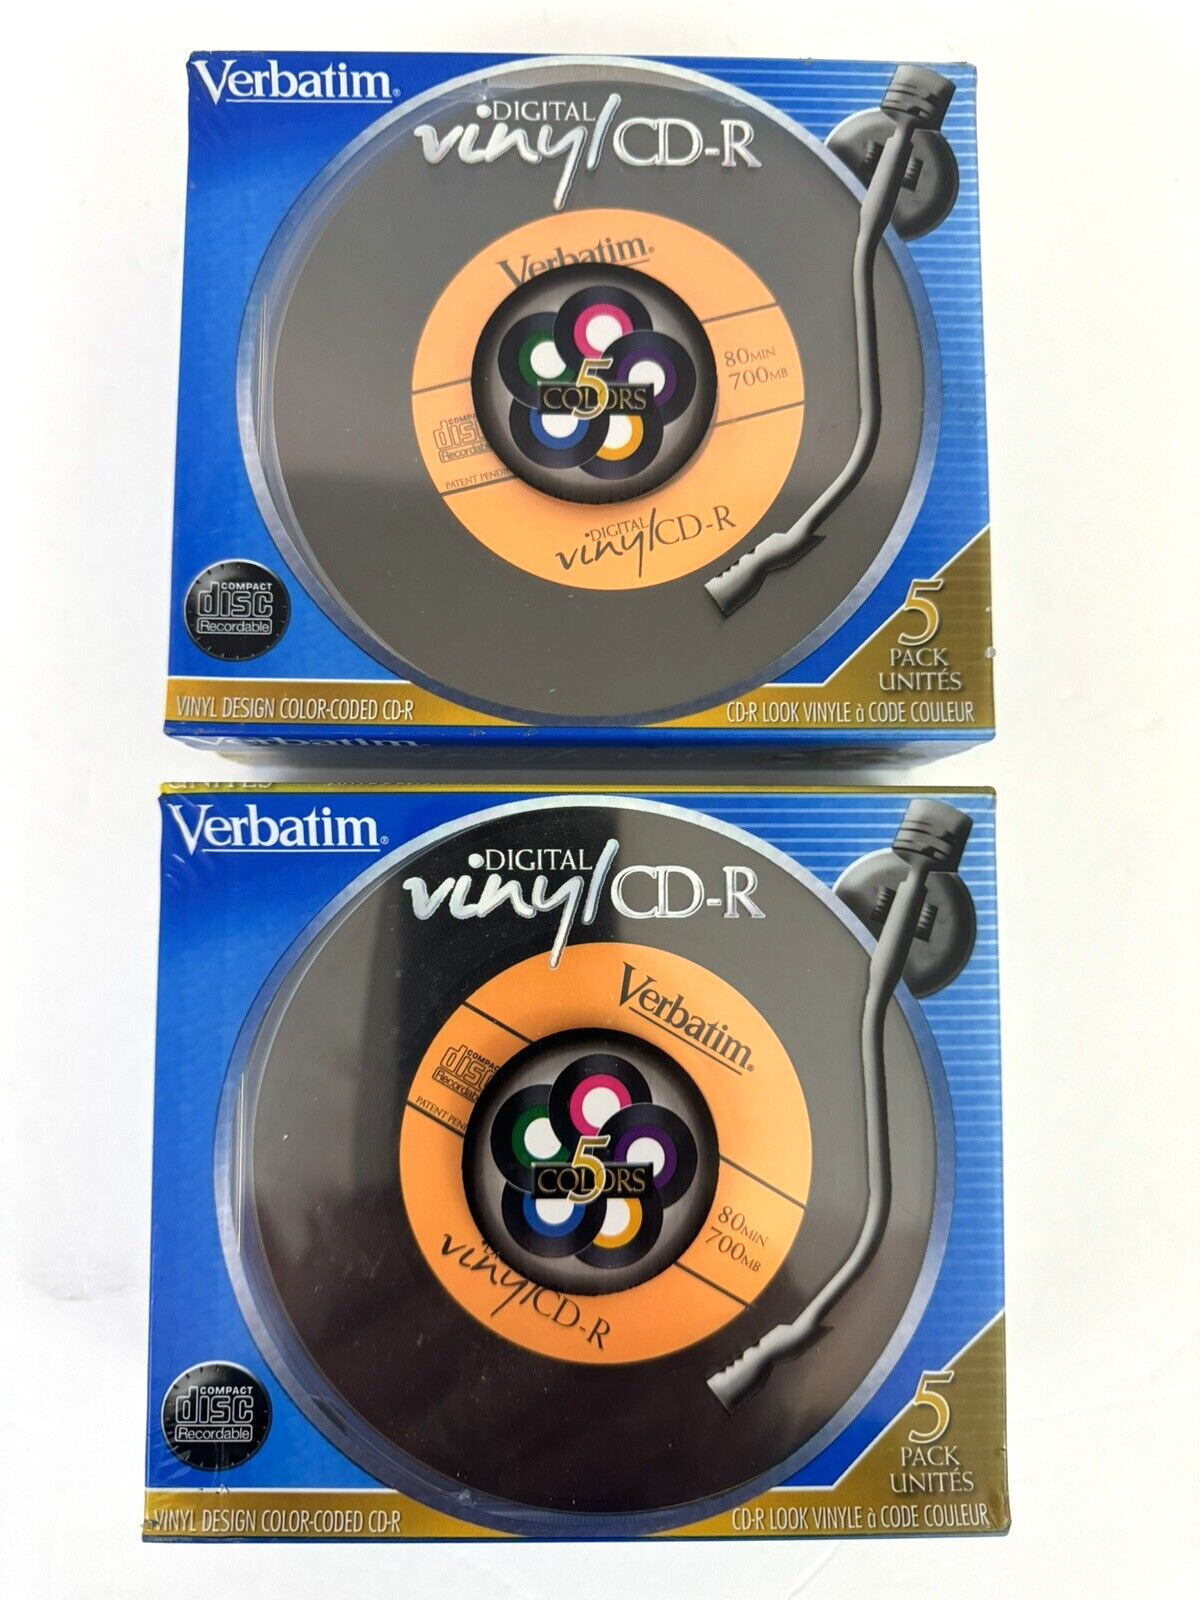 Lot of 2 - Verbatim Digital Vinyl CD-R  5 Pack 80 min 700MB